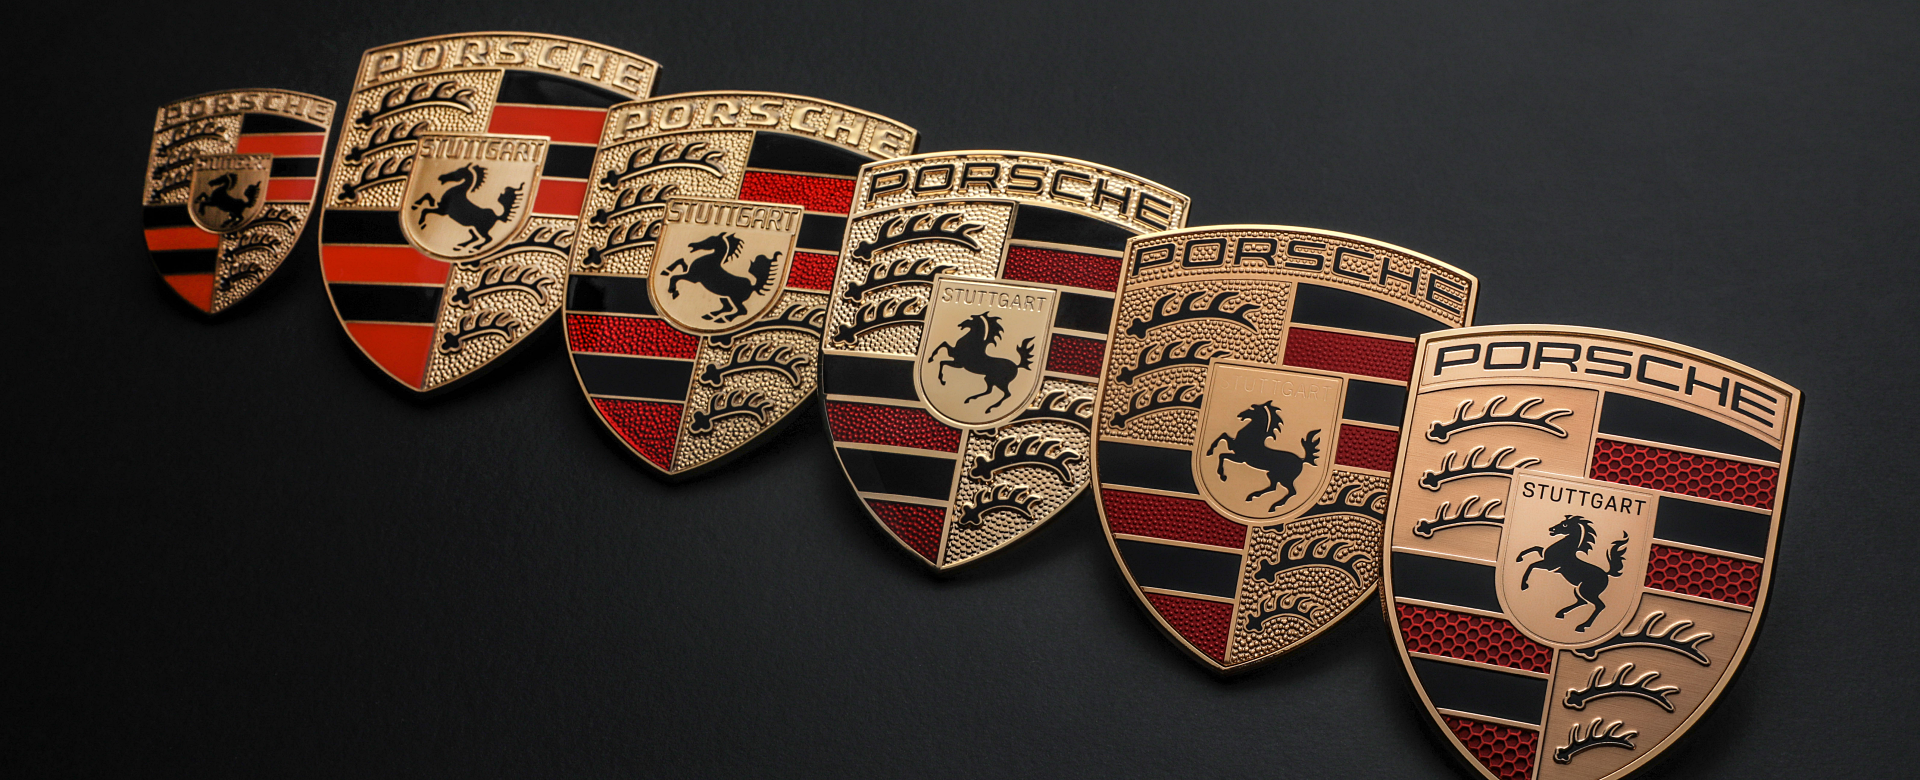 BizLab: Porsche đổi logo nhân dịp kỷ niệm 75 năm thành lập